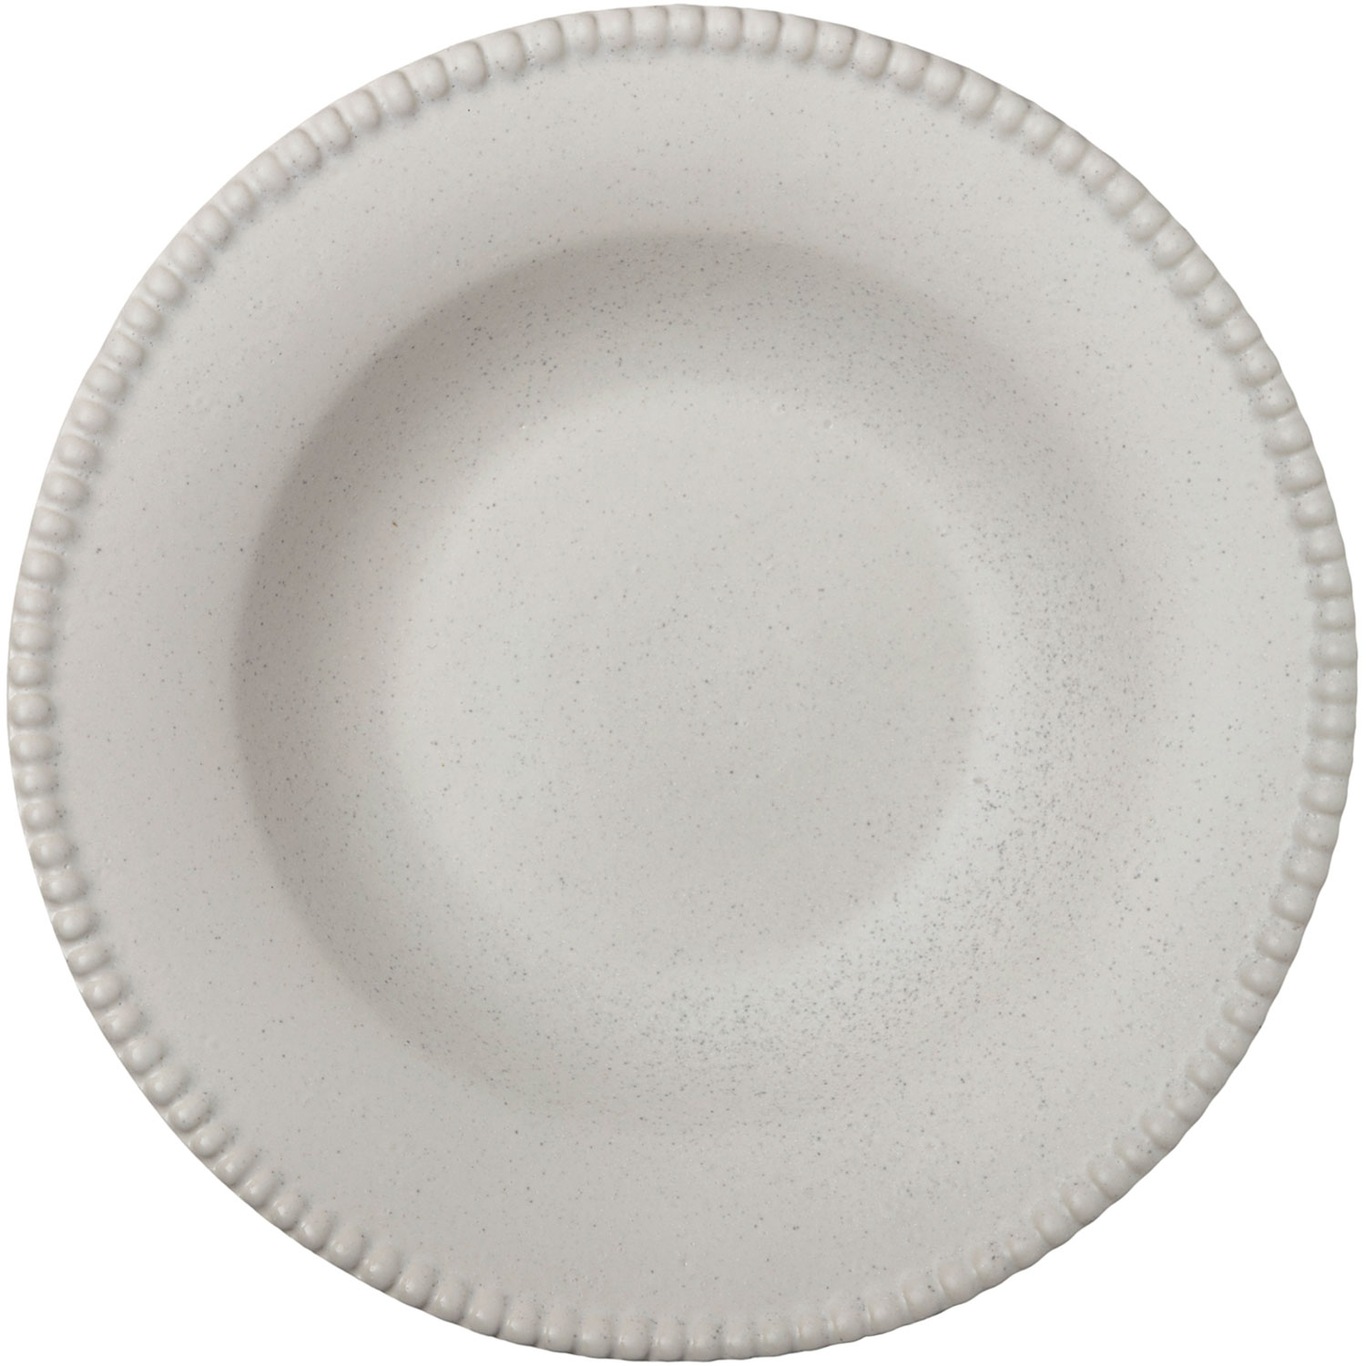 Daria Pasta Plate, Cotton White